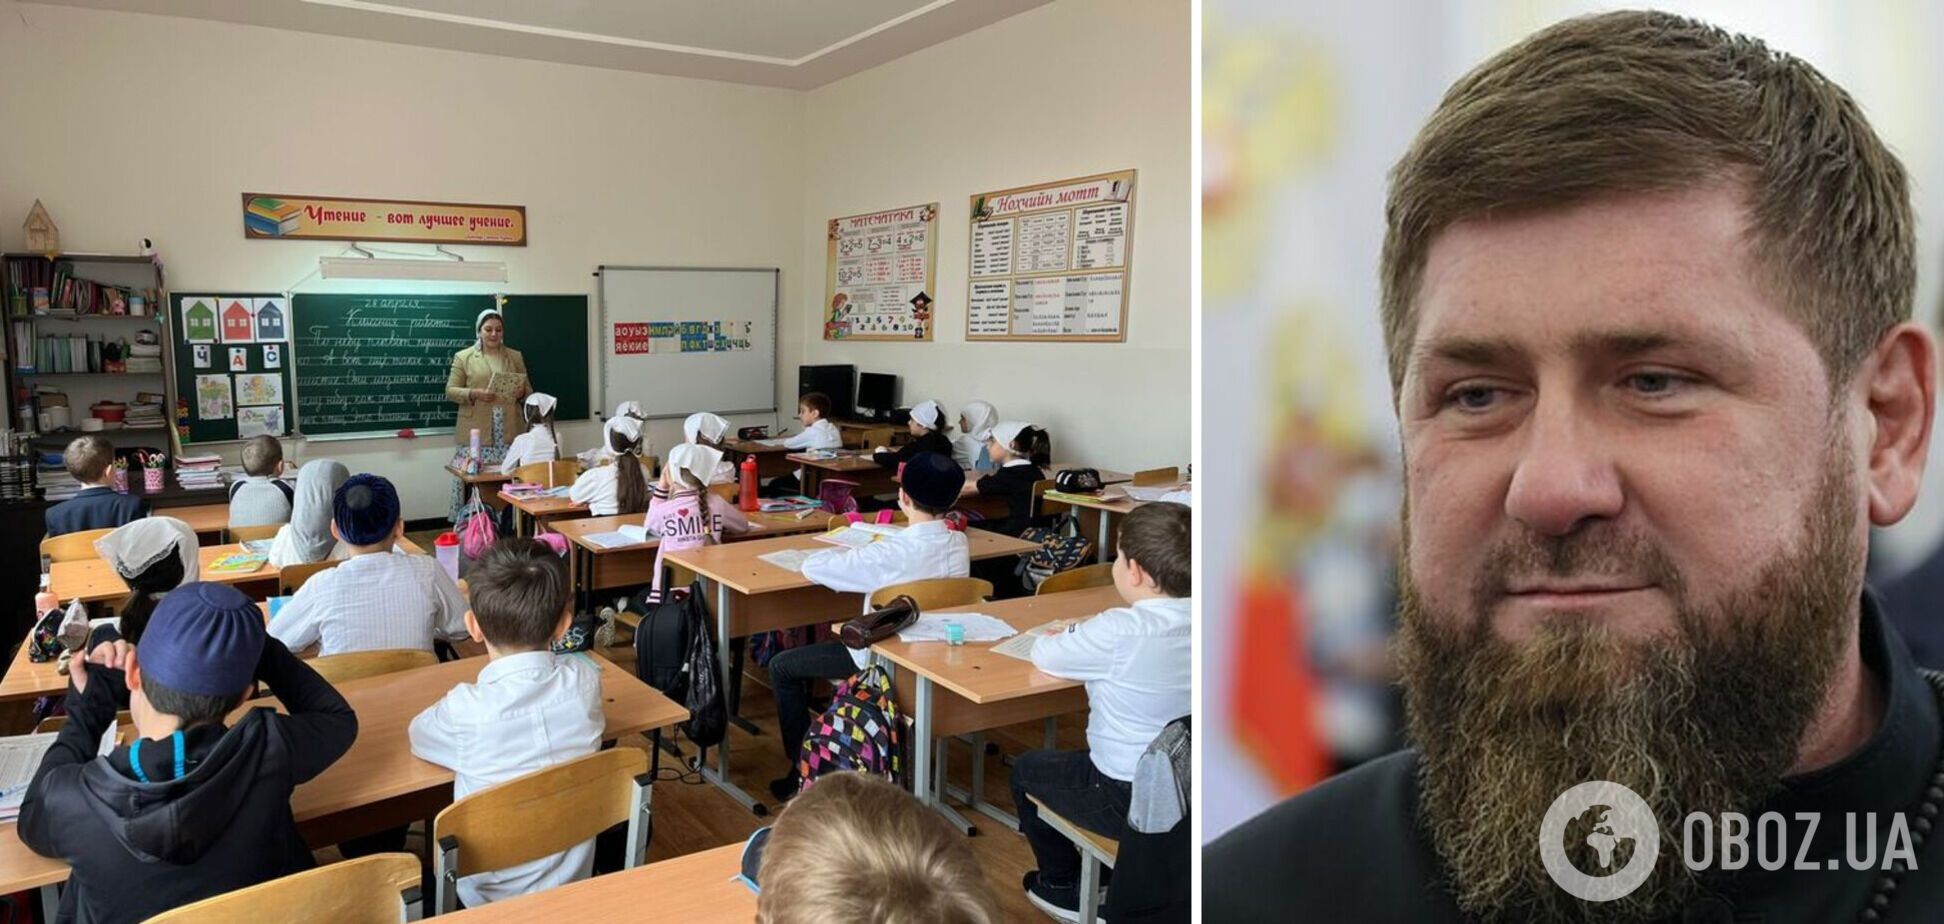 Кадыров заявил, что уволит всех чиновников, дети которых не знают чеченского языка и говорят на русском